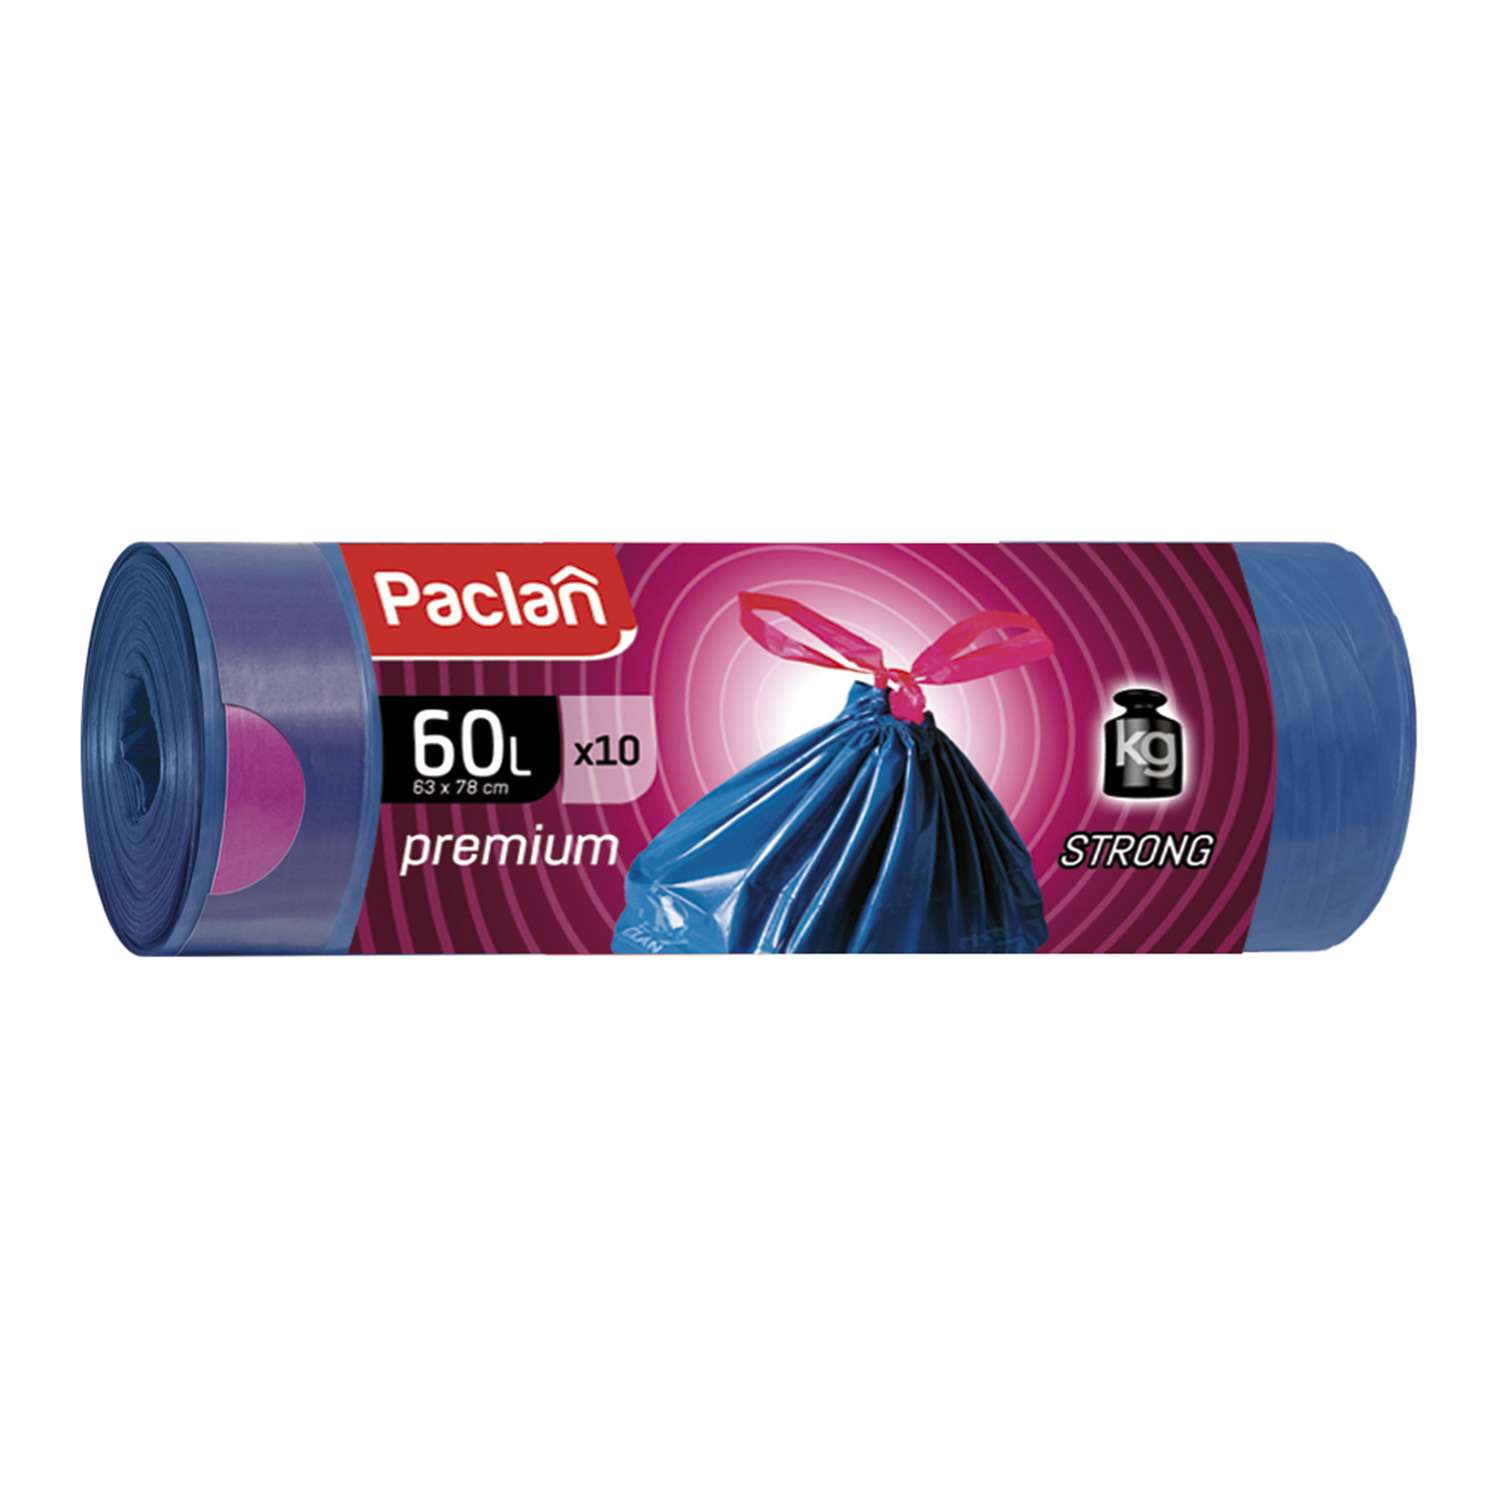 Мешки для мусора Paclan Premium с тесьмой 60л 10шт - фото 1